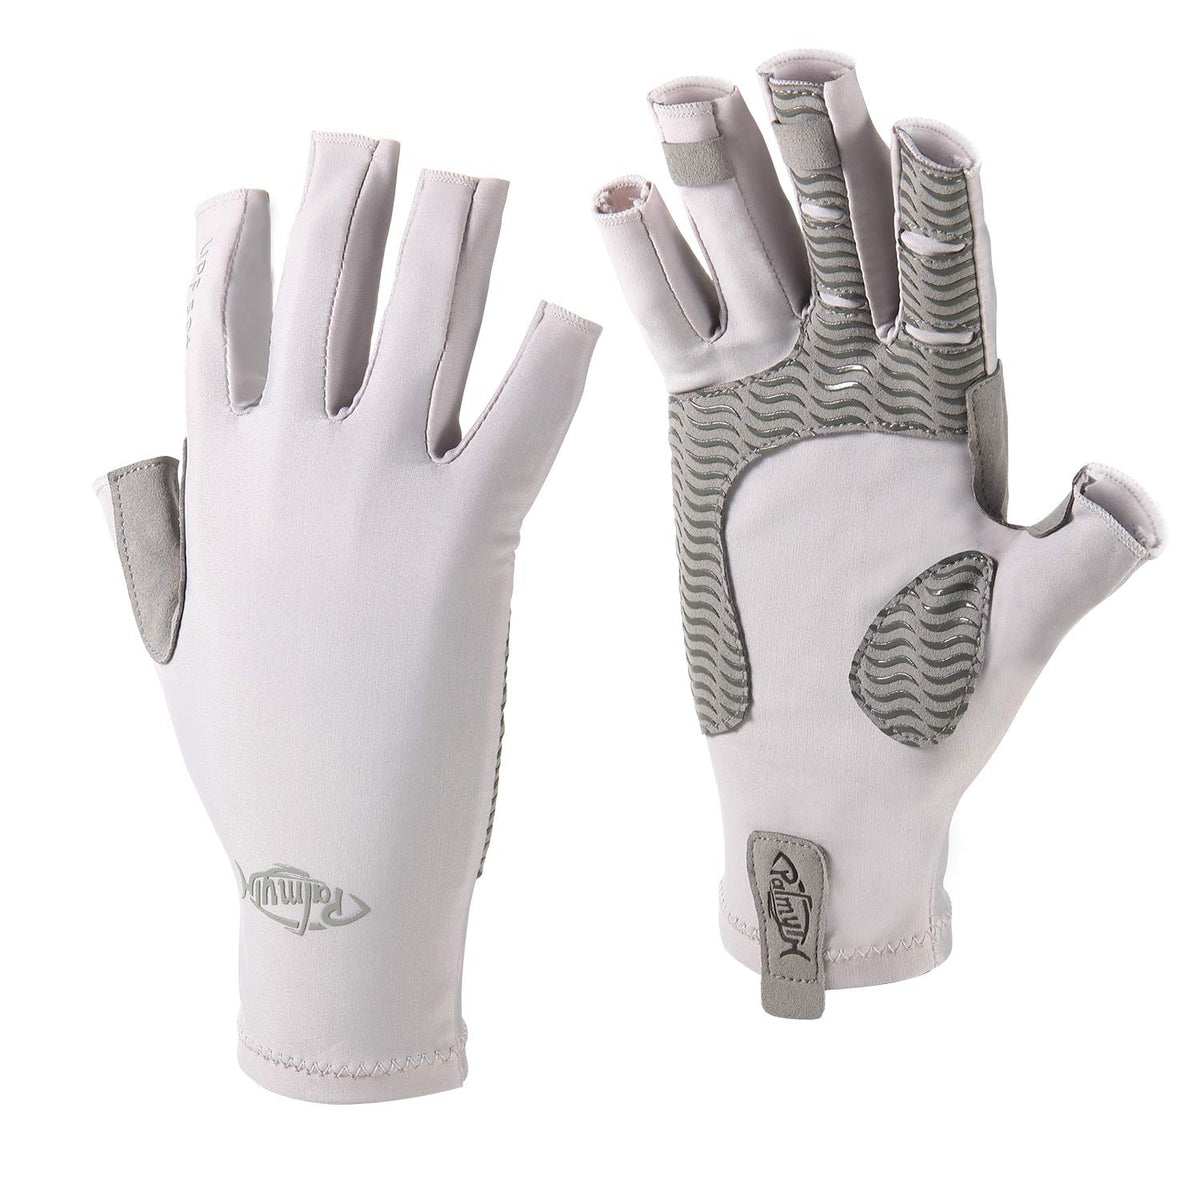 Sun Gloves Fishing Gloves